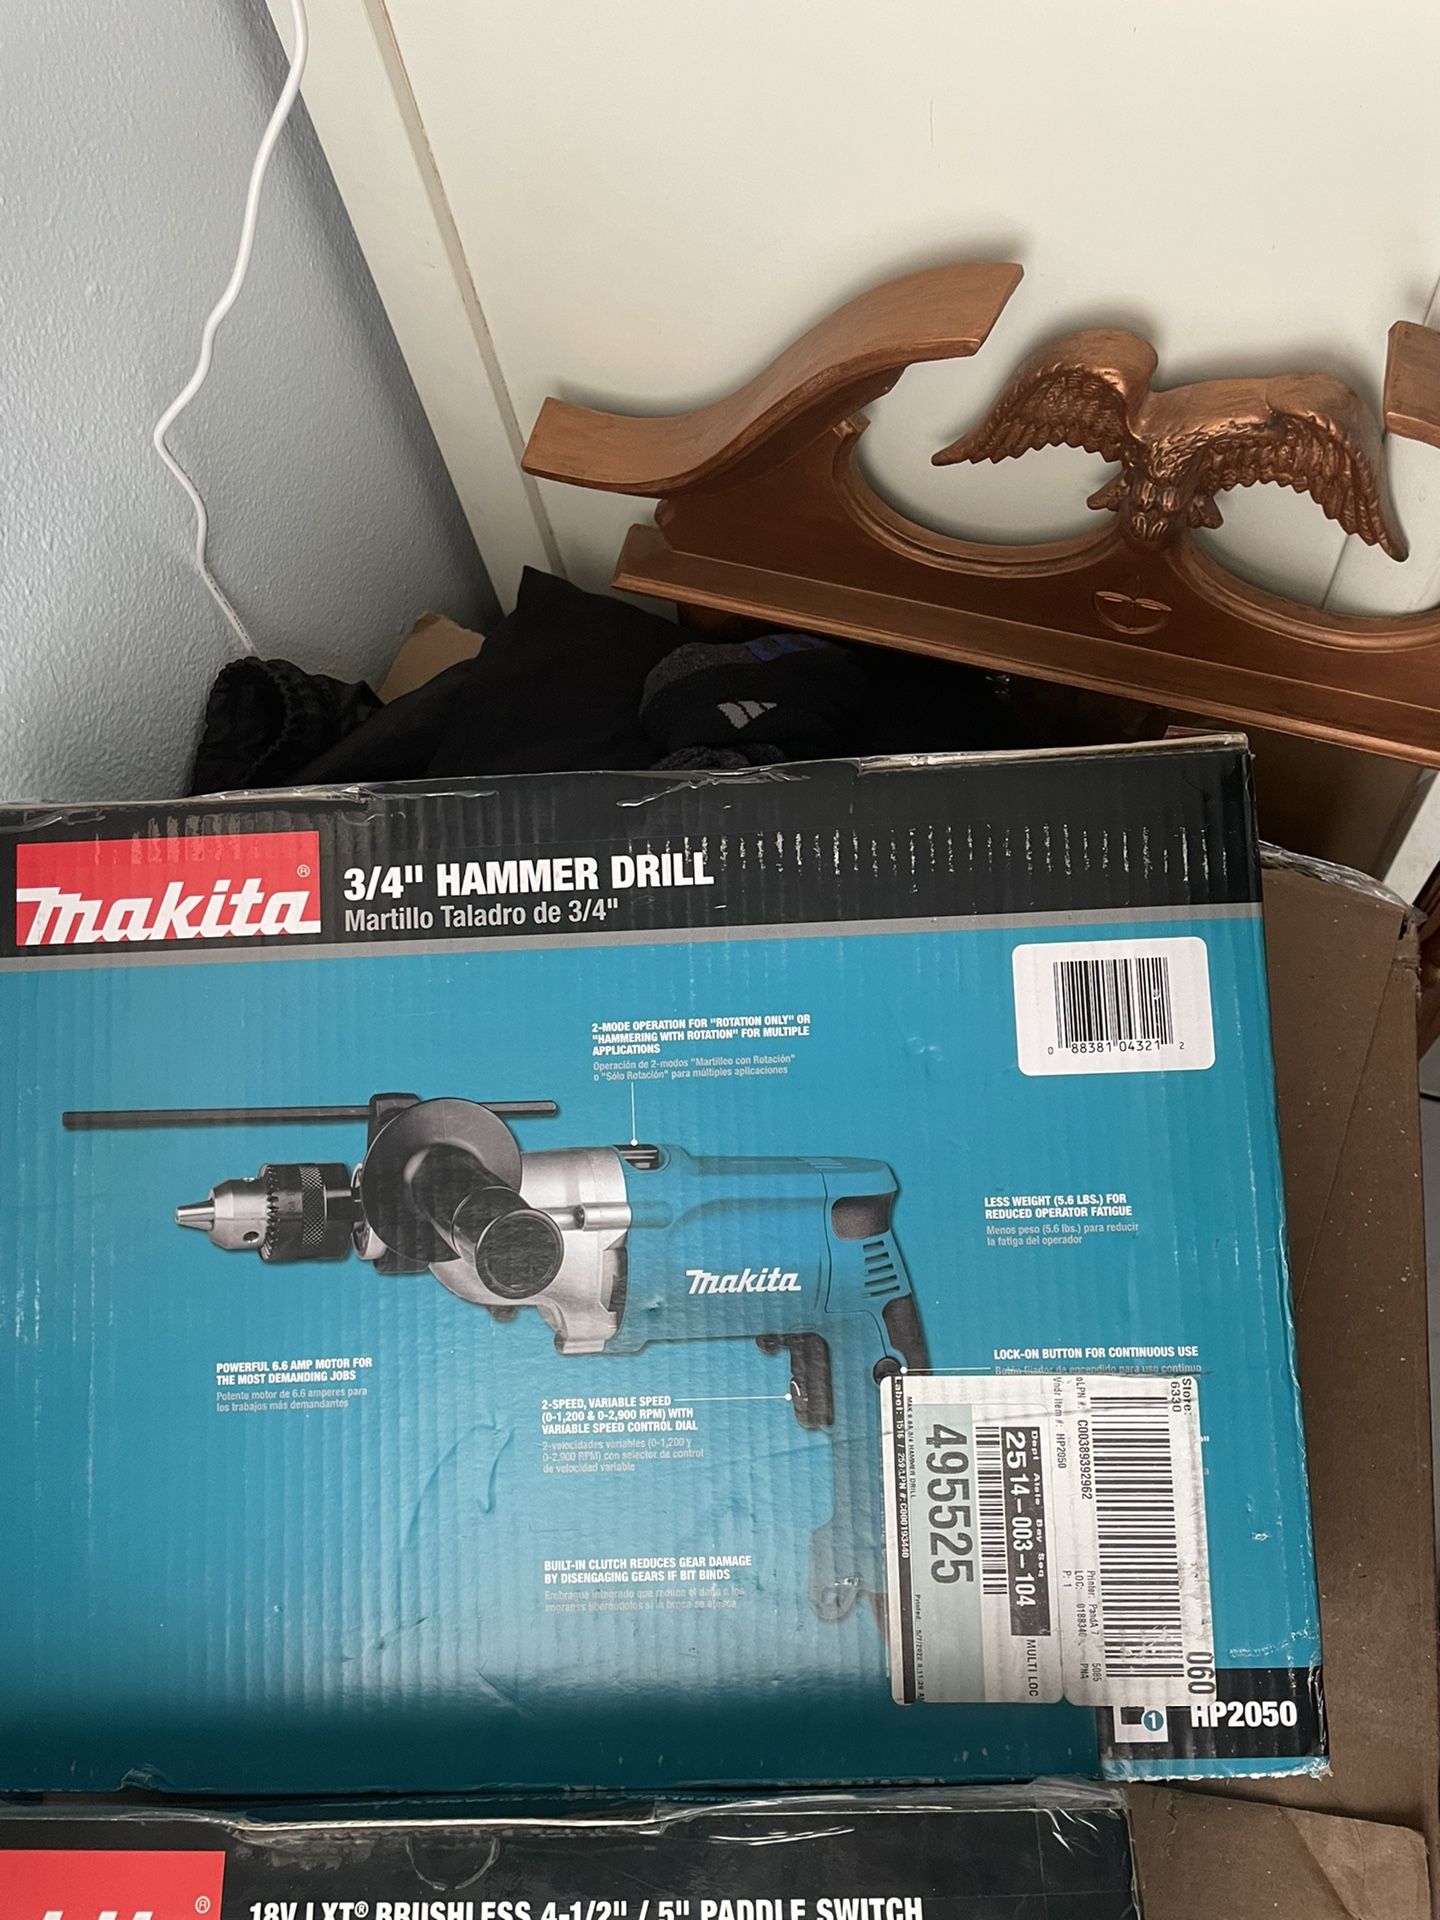 Makita 3/4” Hammer Drill